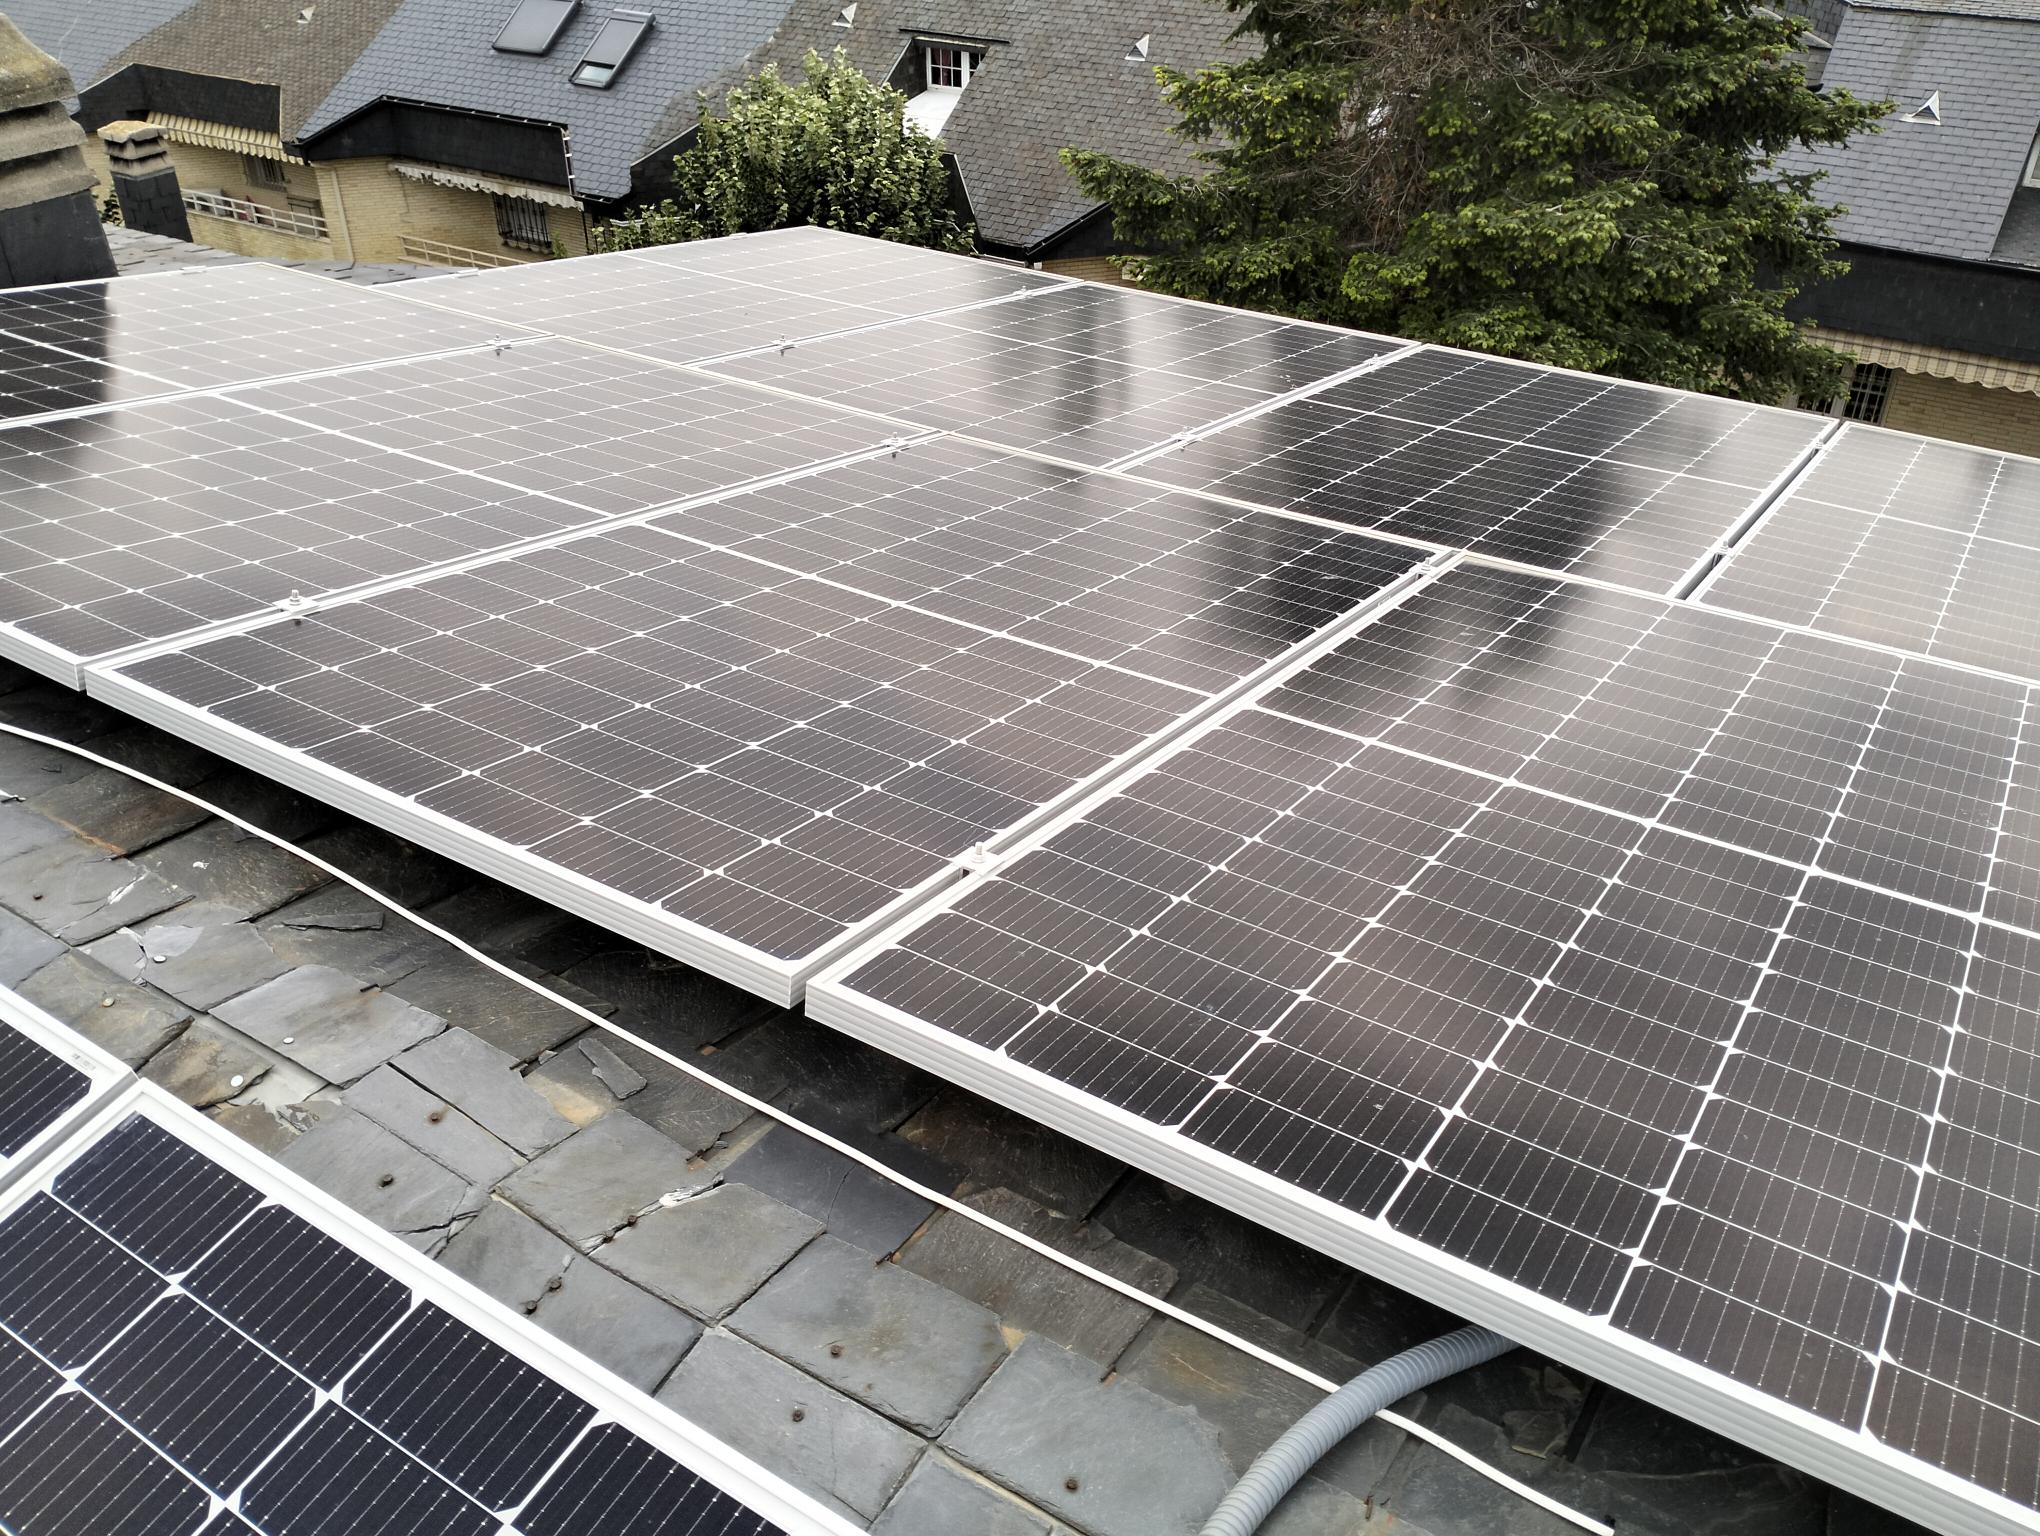 paneles solares en tejados de pizarra